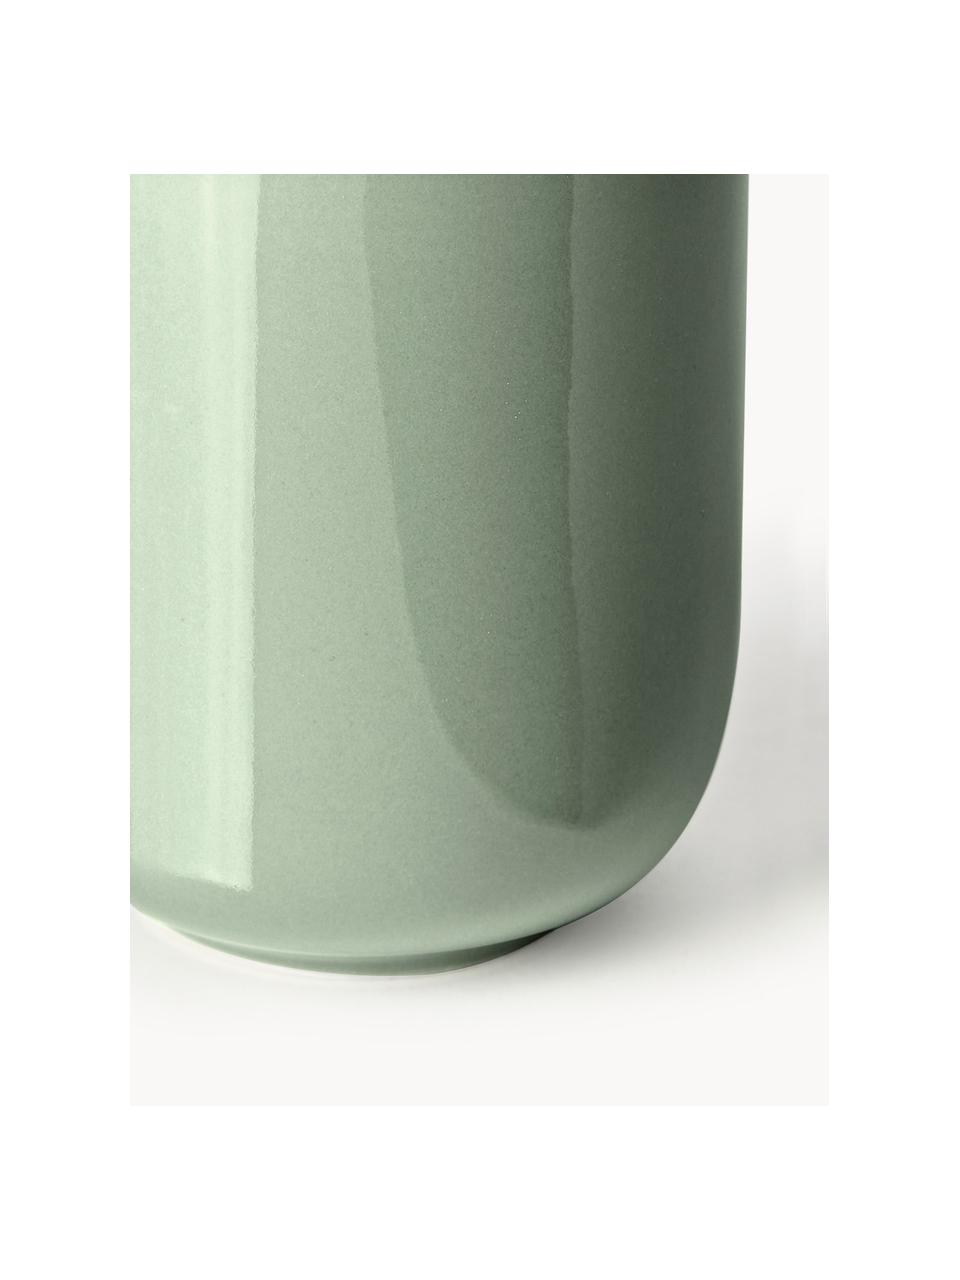 Porzellan-Kaffeebecher Nessa, 4 Stück, Hochwertiges Hartporzellan, glasiert, Salbeigrün, glänzend, Ø 8 x H 10 cm, 200 ml